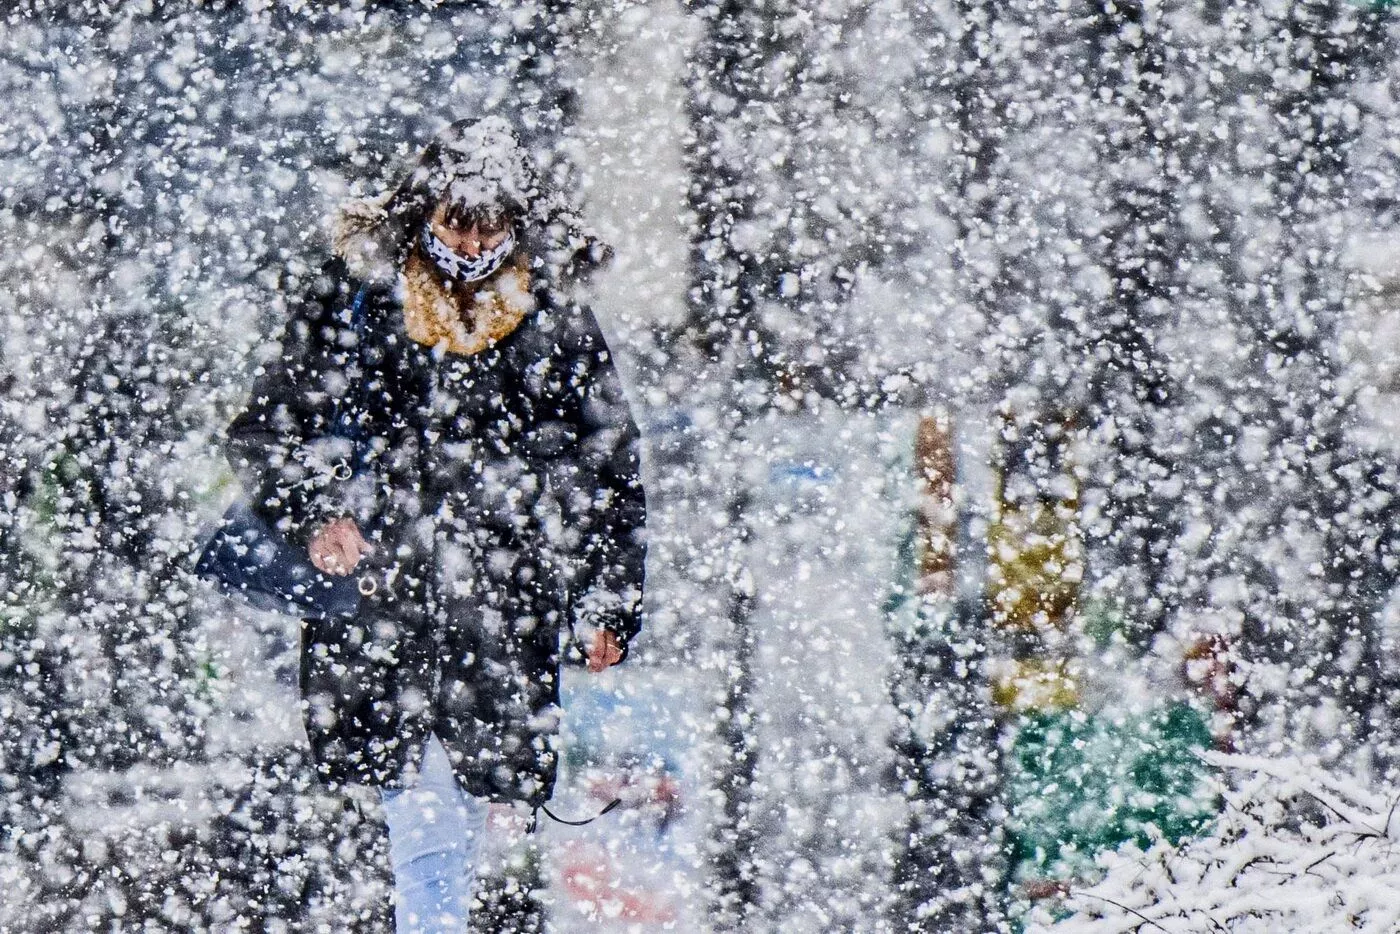 Lidé ve sněhové vánici, ilustrační foto